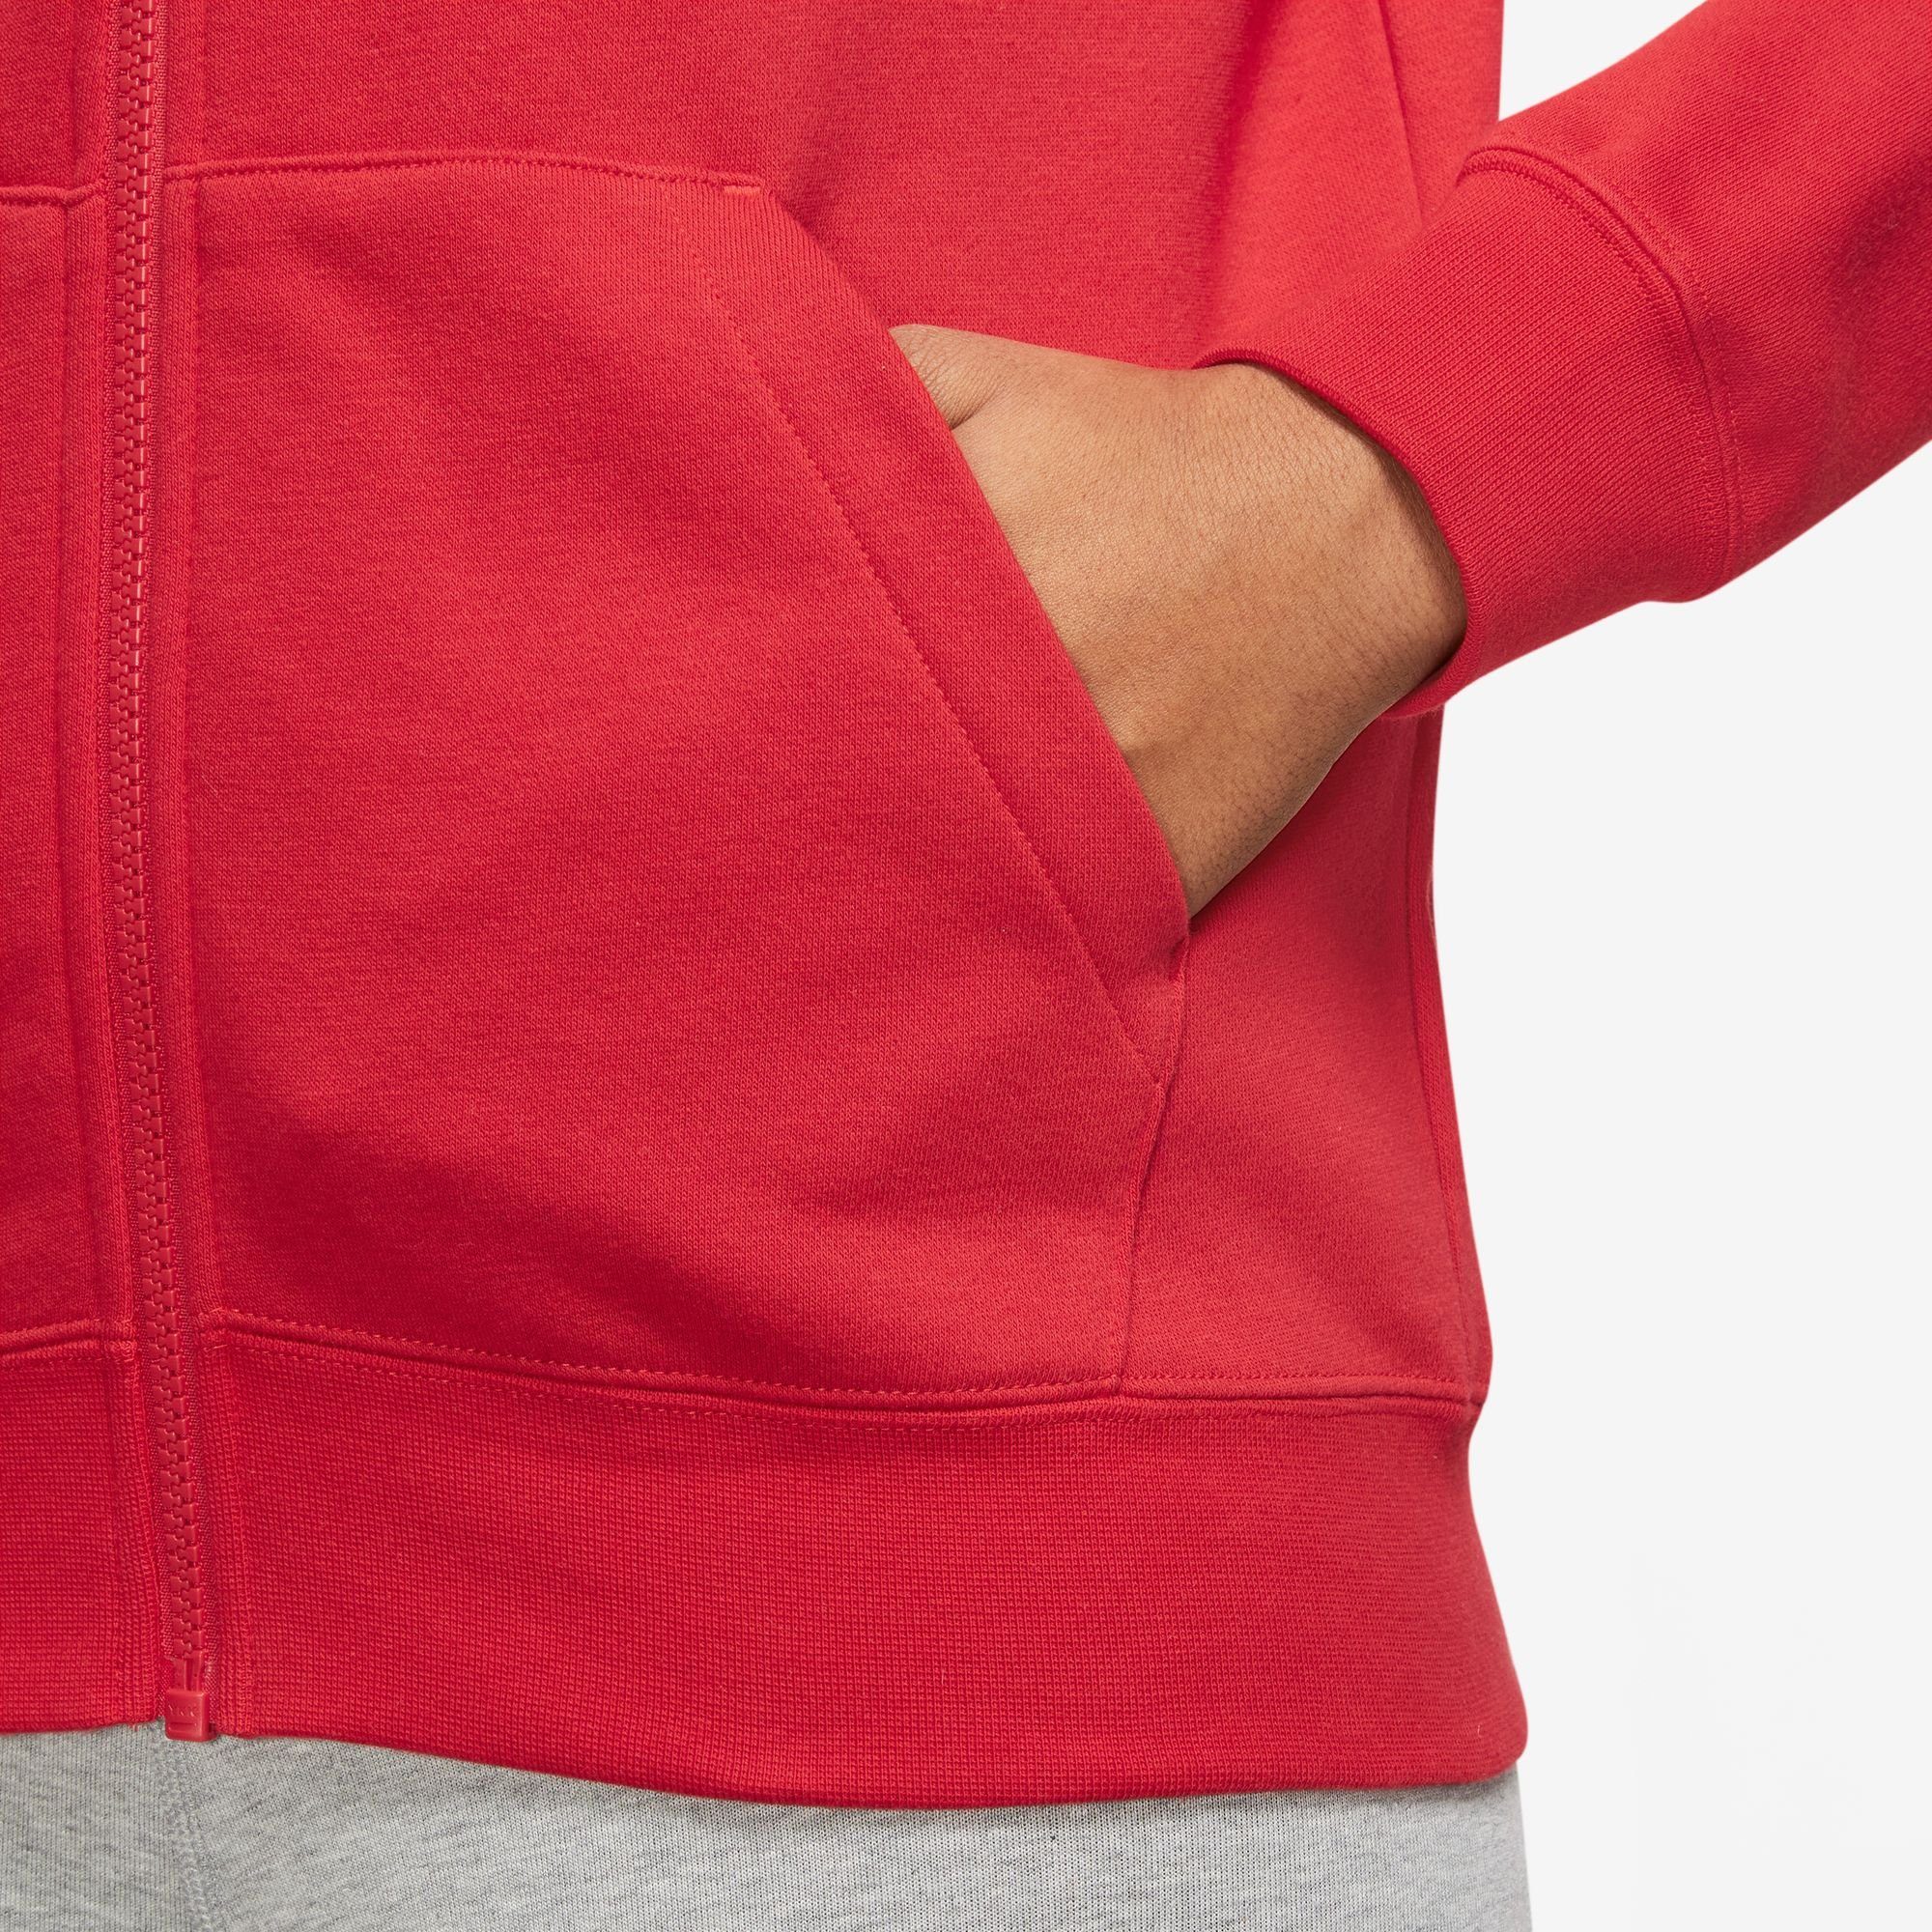 Full-Zip Sportswear Club Kapuzensweatjacke RED/WHITE Nike Hoodie Women's UNIVERSITY Fleece